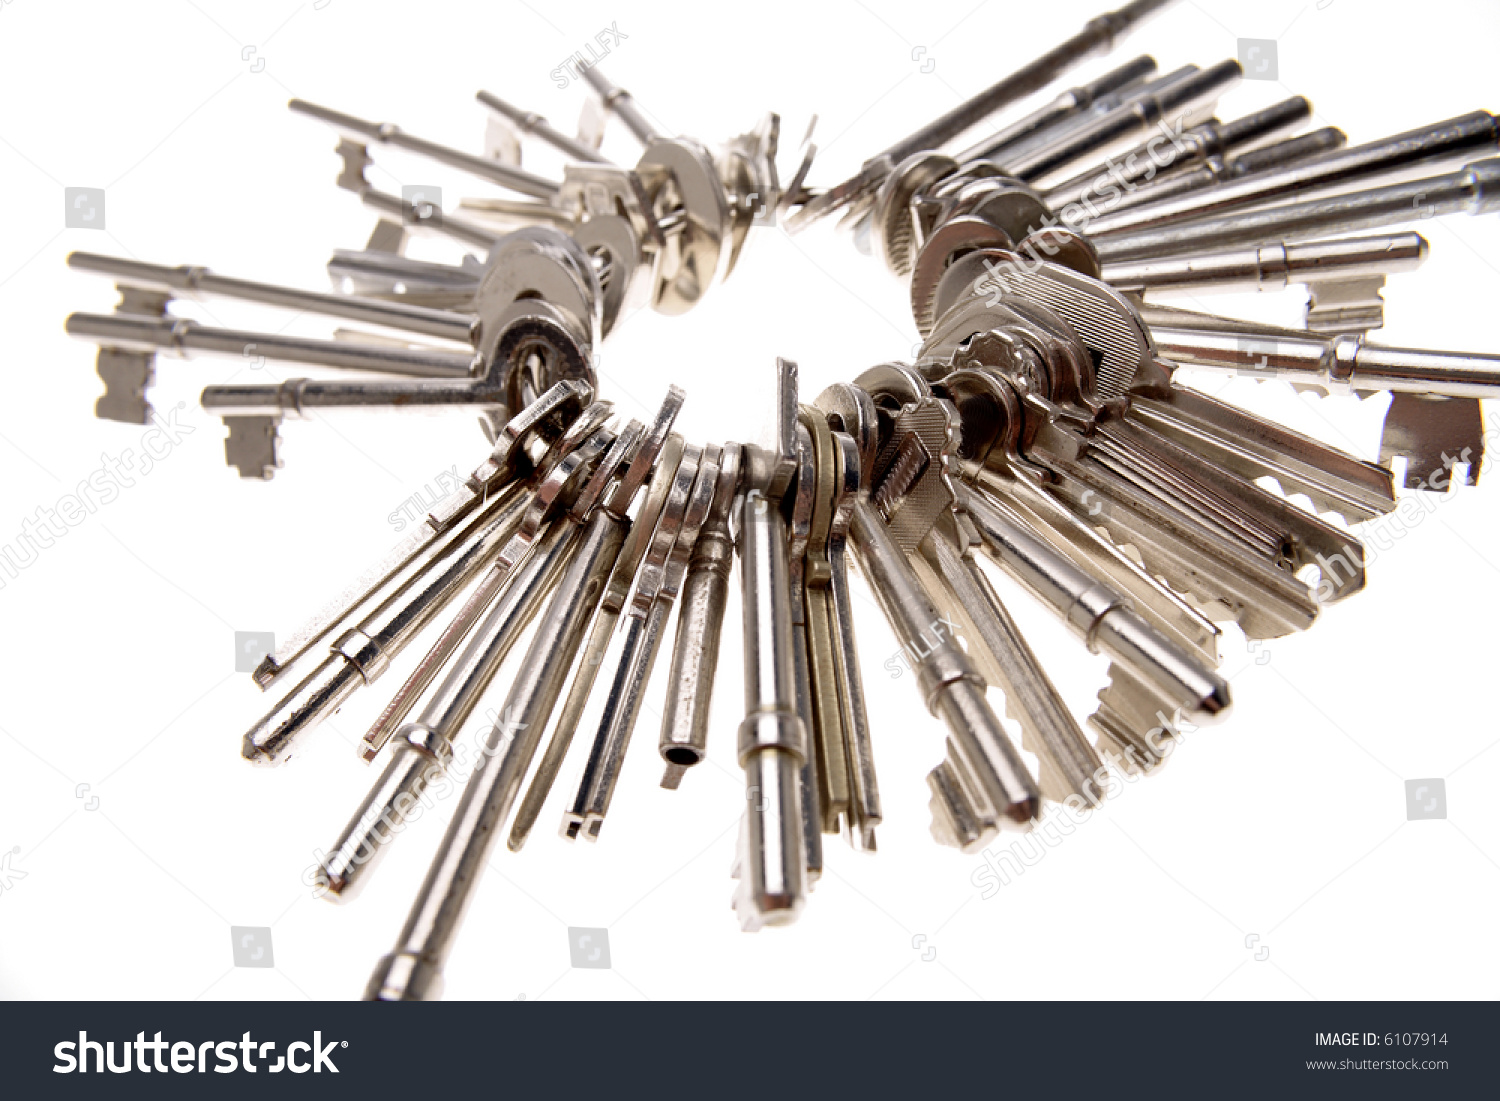 https://image.shutterstock.com/z/stock-photo-keys-on-keyring-over-white-6107914.jpg